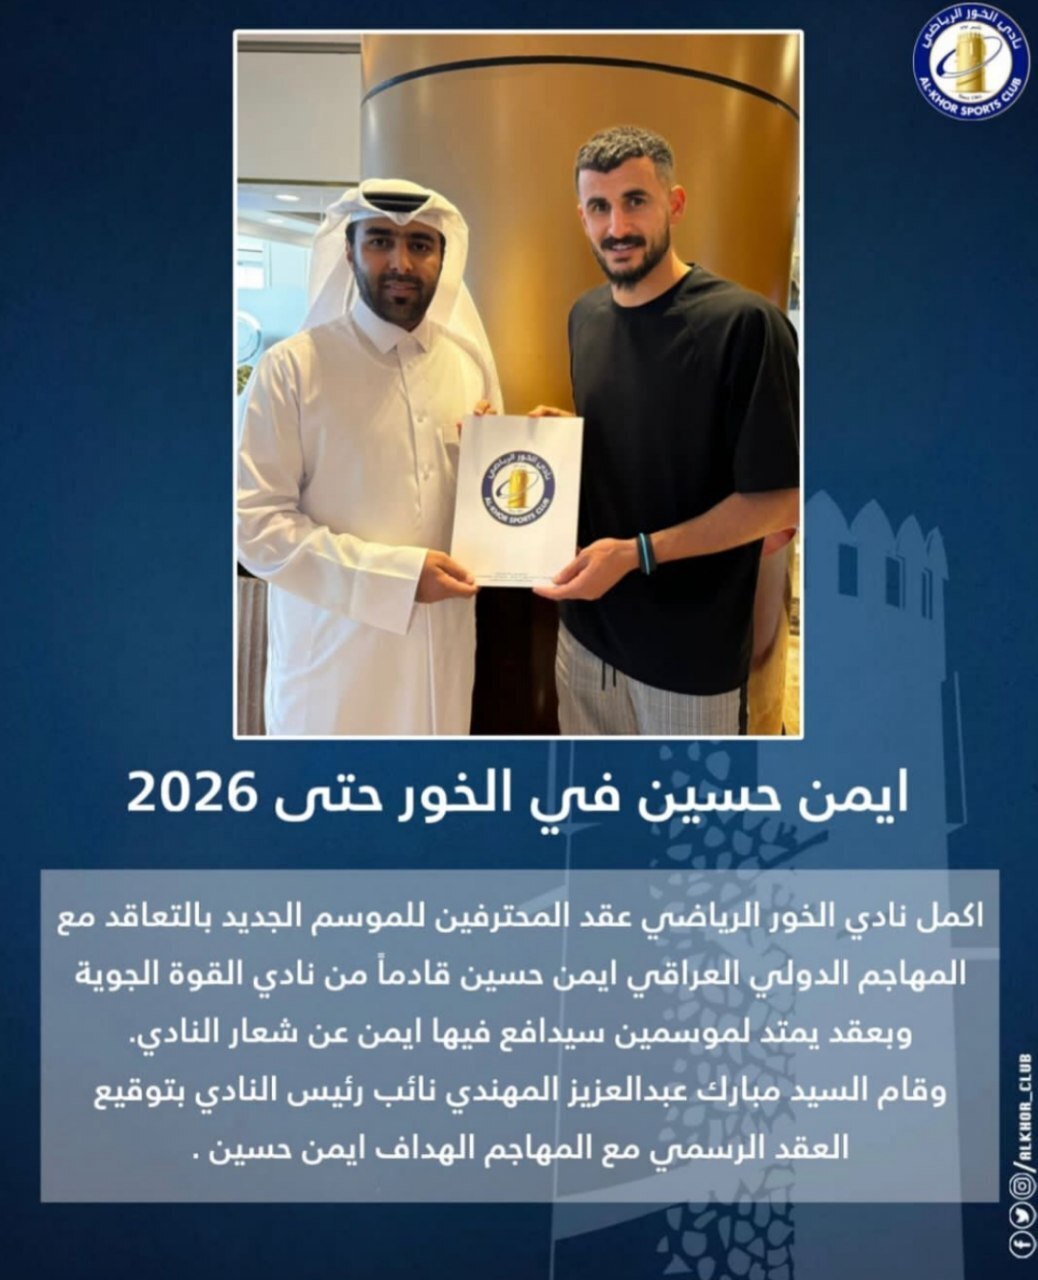 باشگاه قطری ستاره تیم ملی عراق را شکار کرد